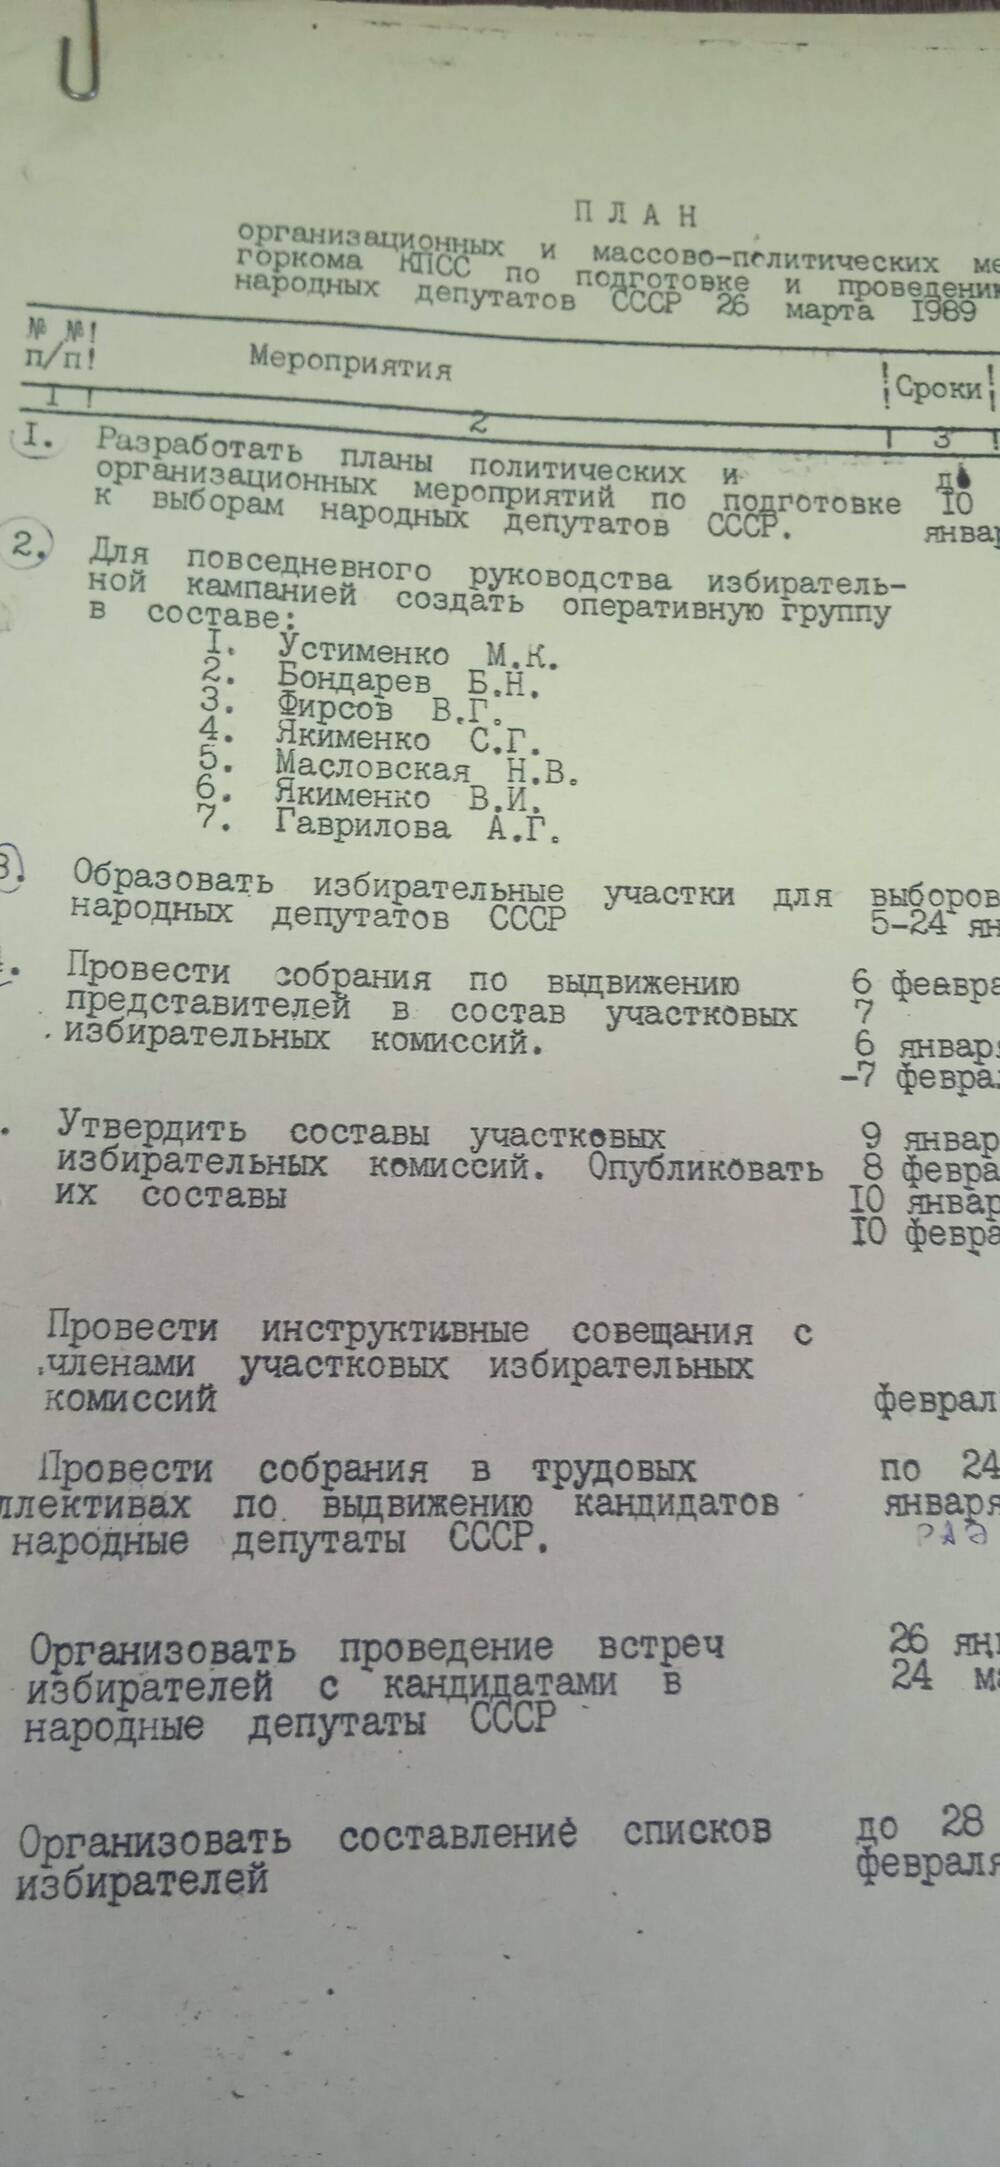 План организационных и массово-политических мероприятий горкома КПСС по подготовке  и проведению выборов народных депутатов СССР  26 марта 1989 года.